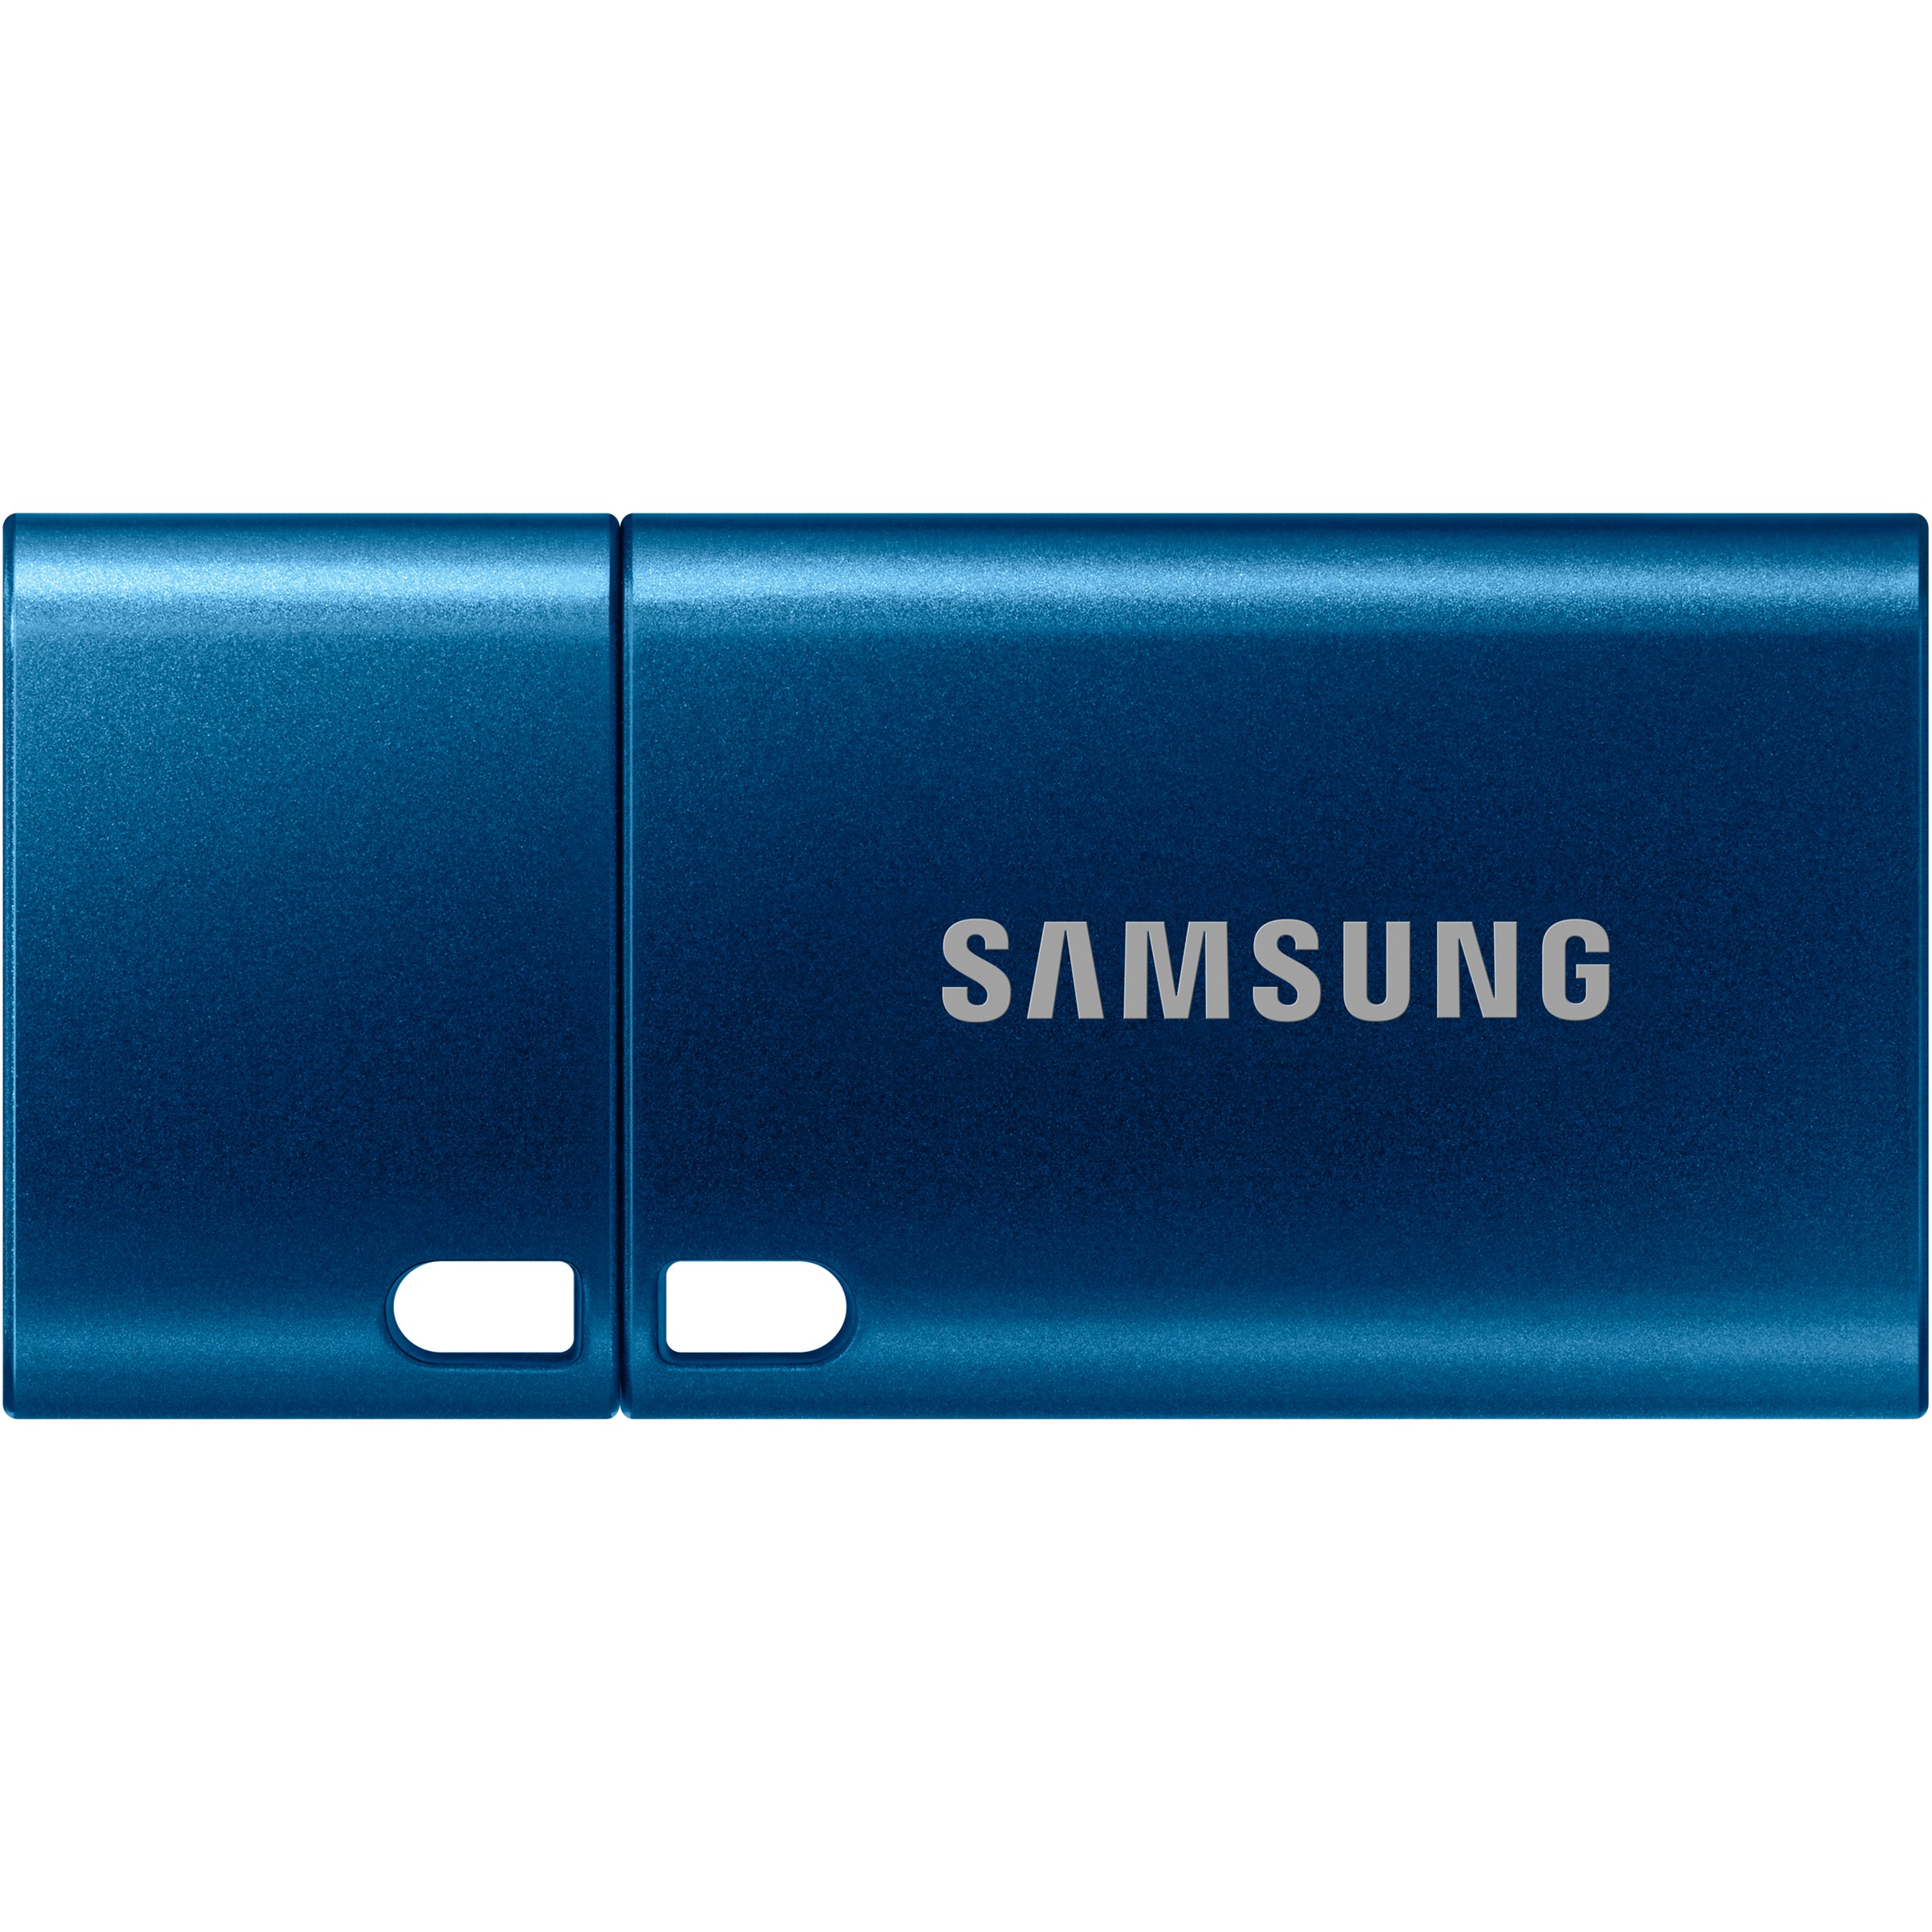 Samsung MUF-256DA USB flash drive - MUF-256DA/APC